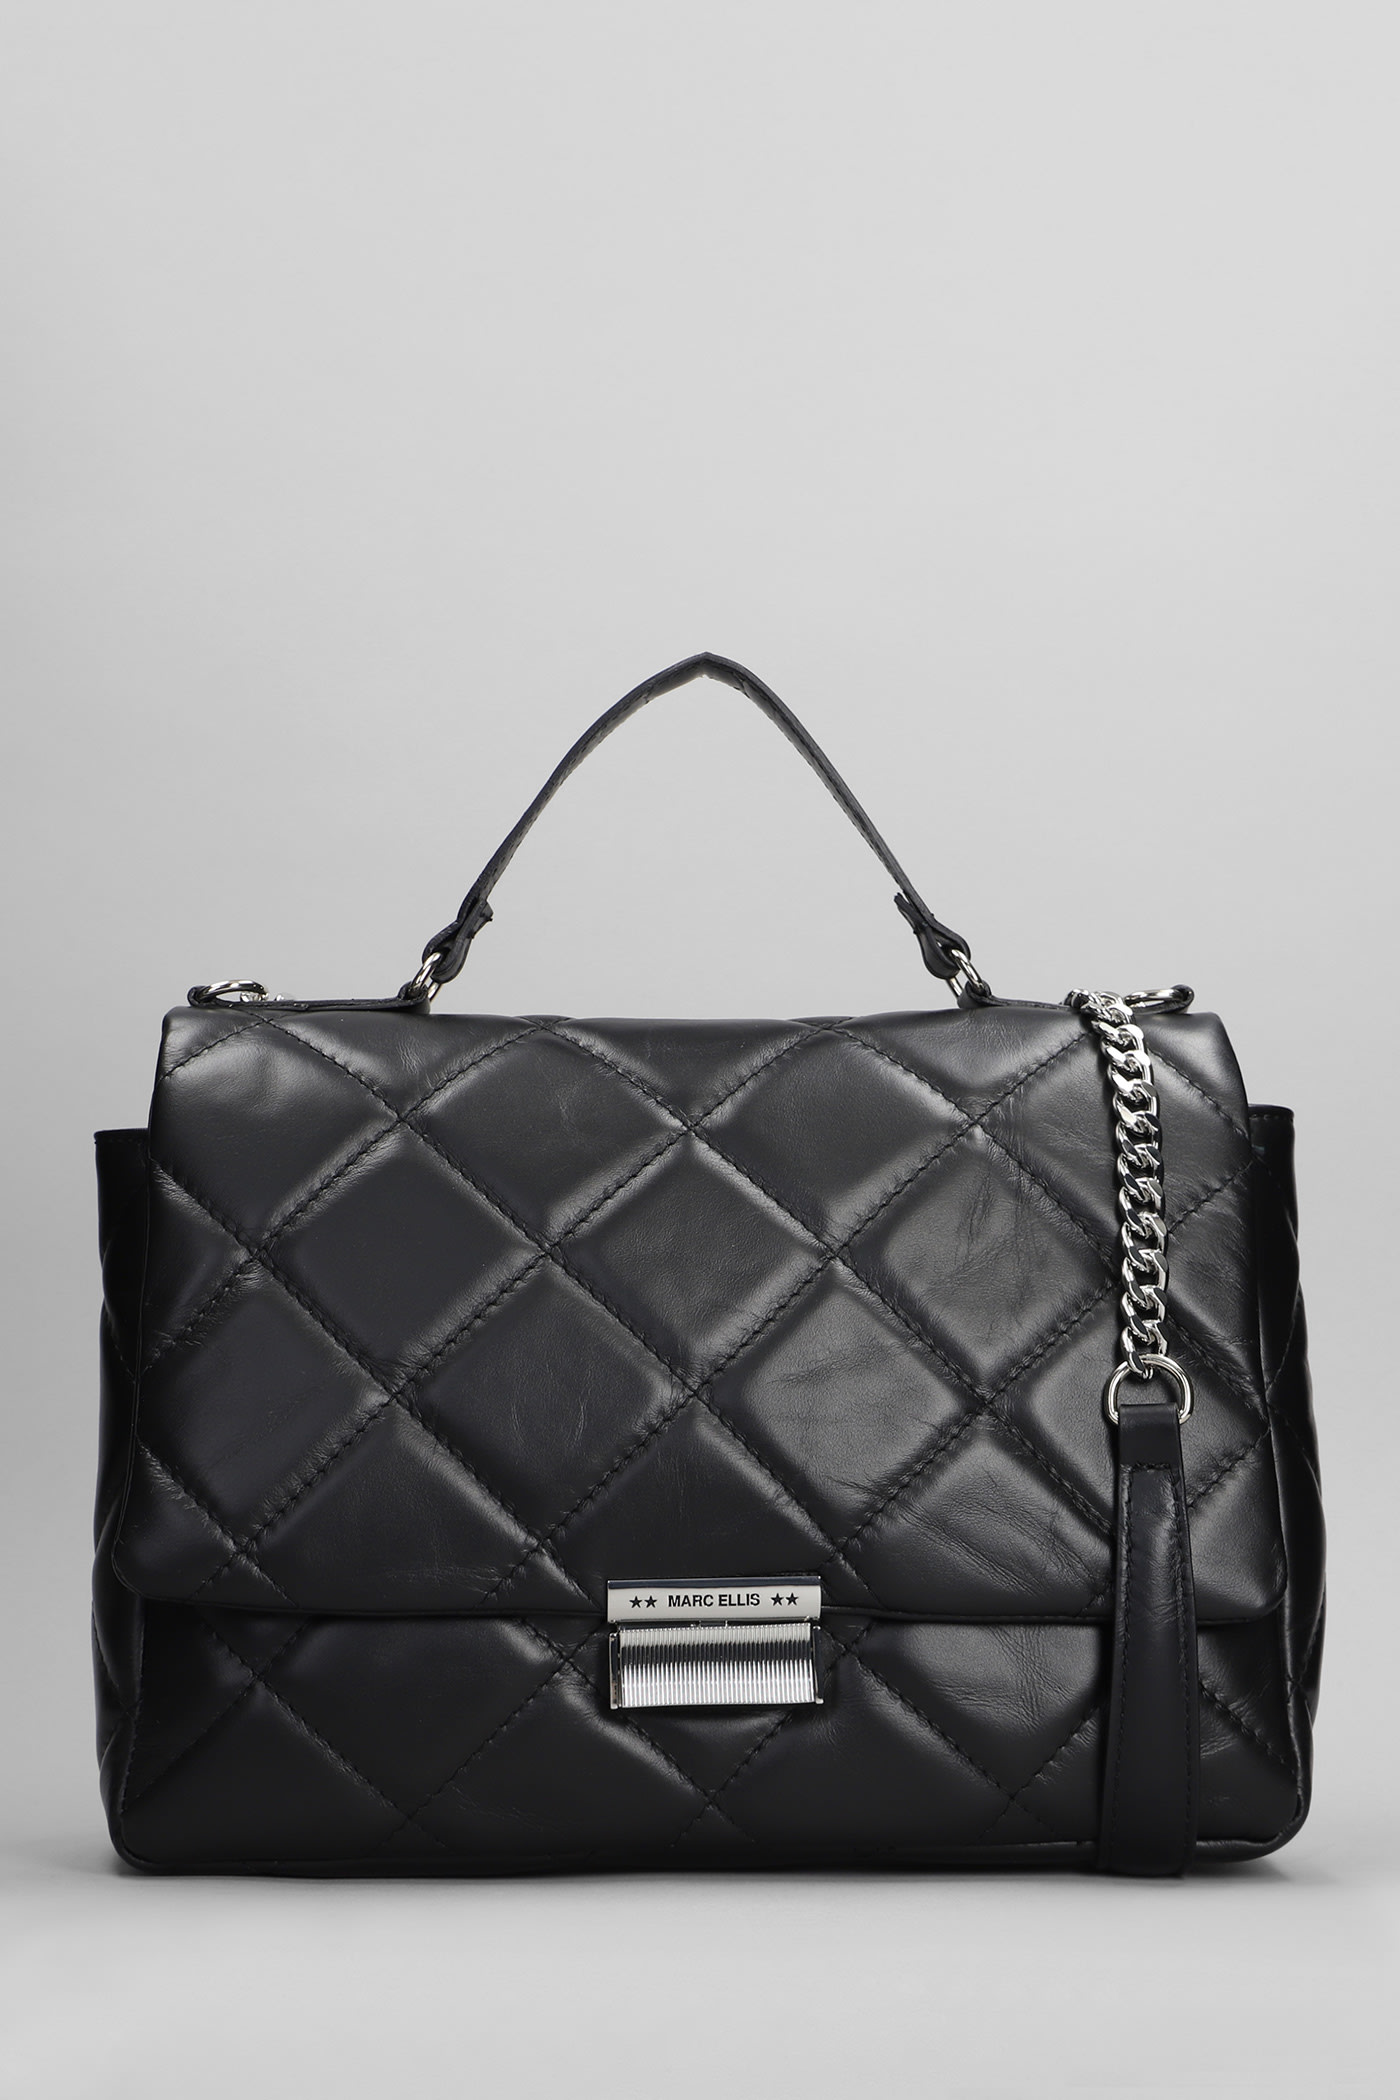 Dana L Sa Shoulder Bag In Black Leather